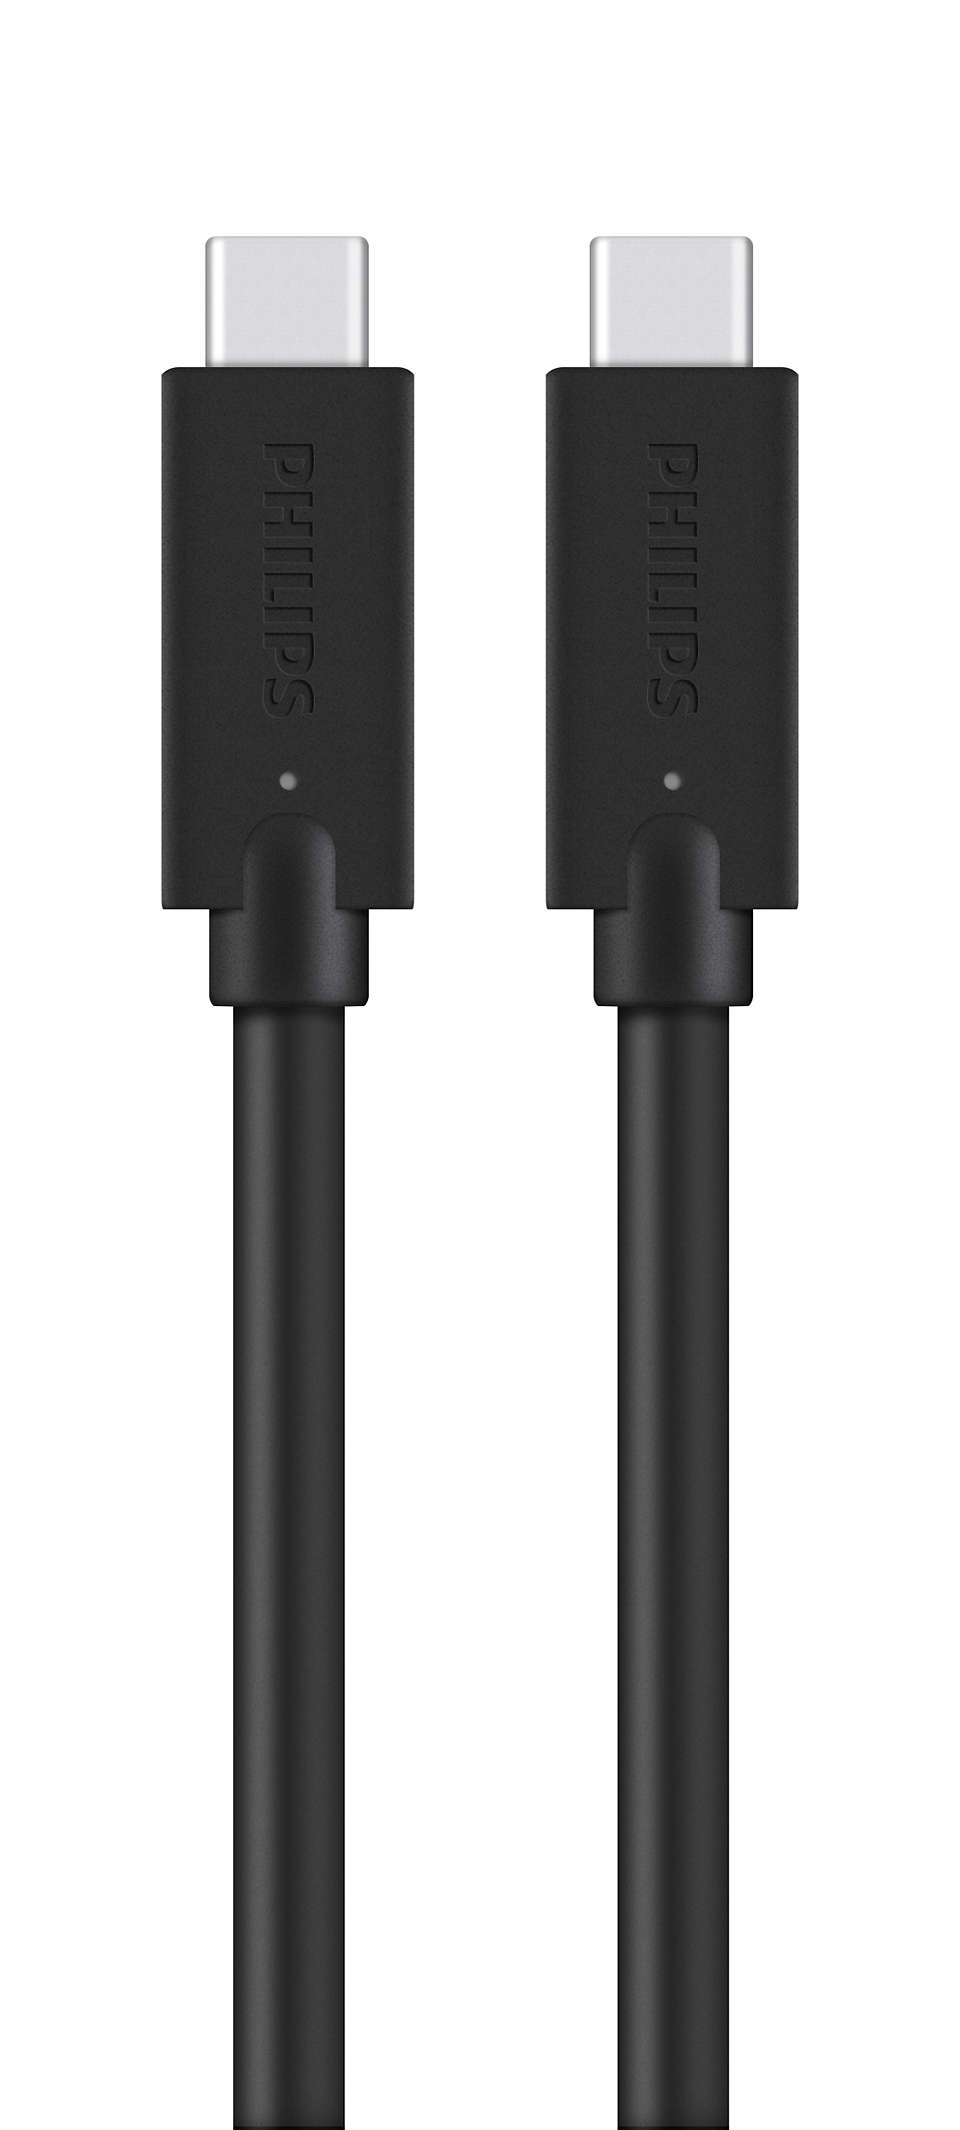 สายเคเบิลถัก USB-C กับ USB-C ระดับพรีเมียม